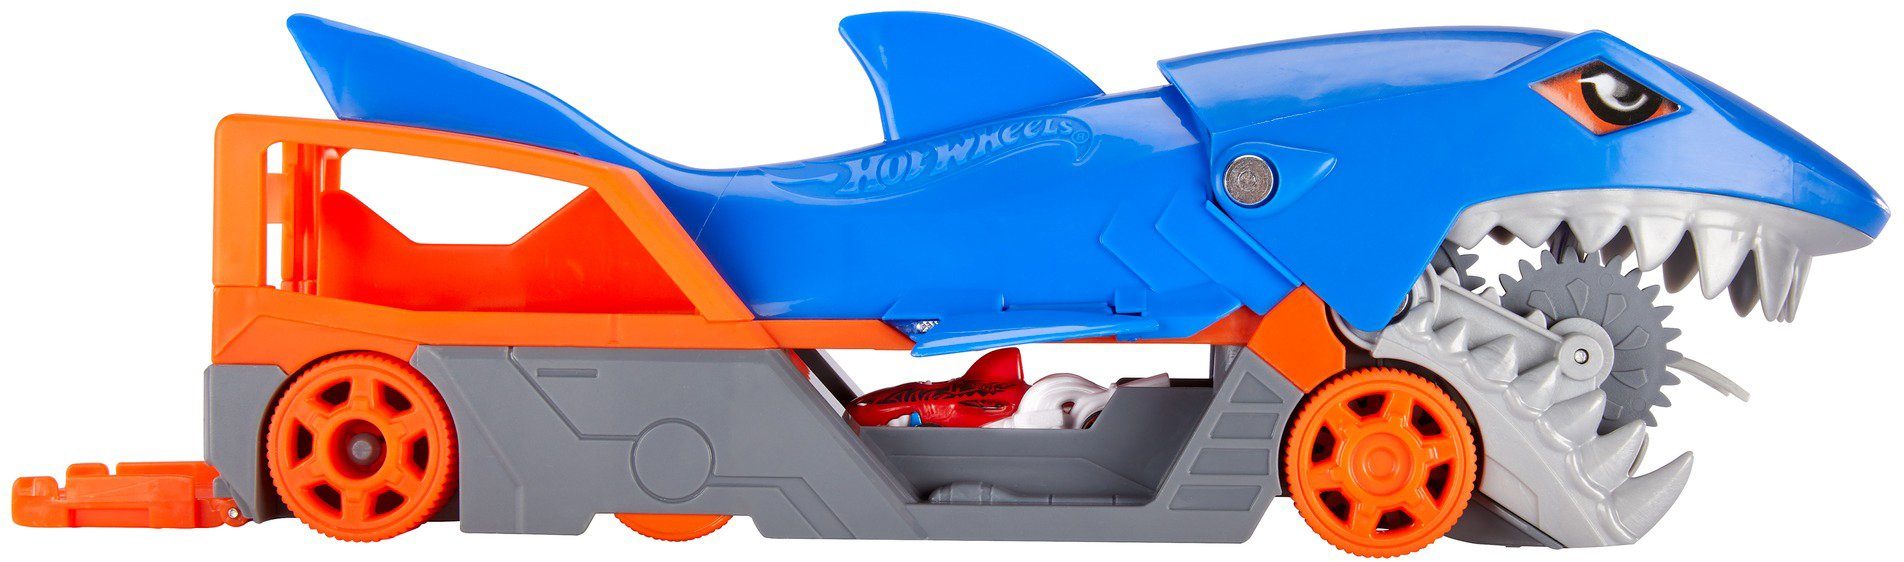 Hot Wheels Spielzeug-Transporter »Hungriger Hai-Transporter« online kaufen  | OTTO